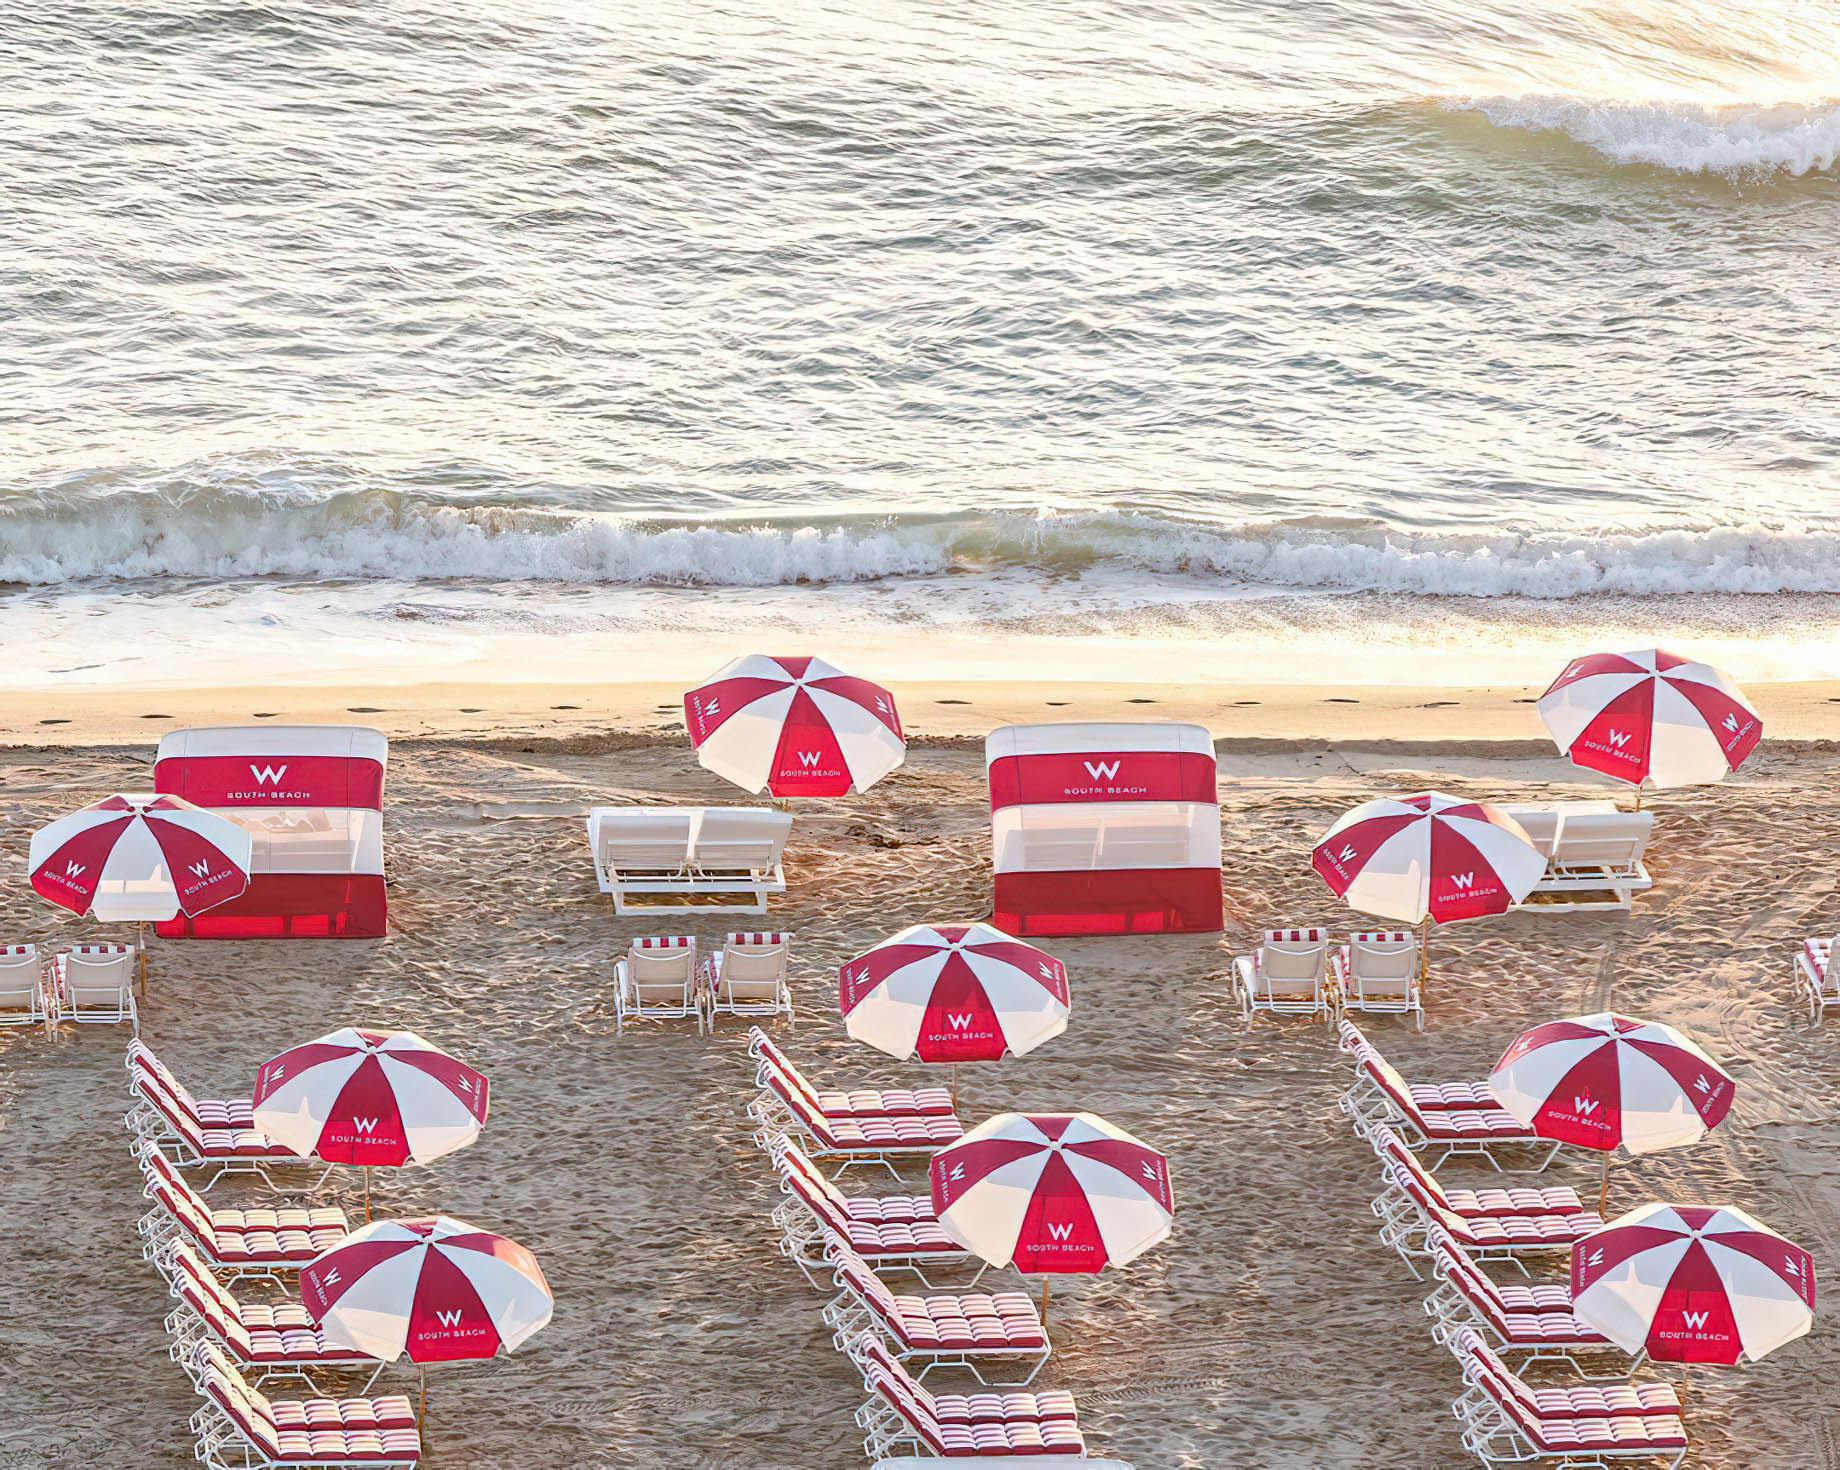 W South Beach Hotel – Miami Beach, FL, USA – W Beach Chairs